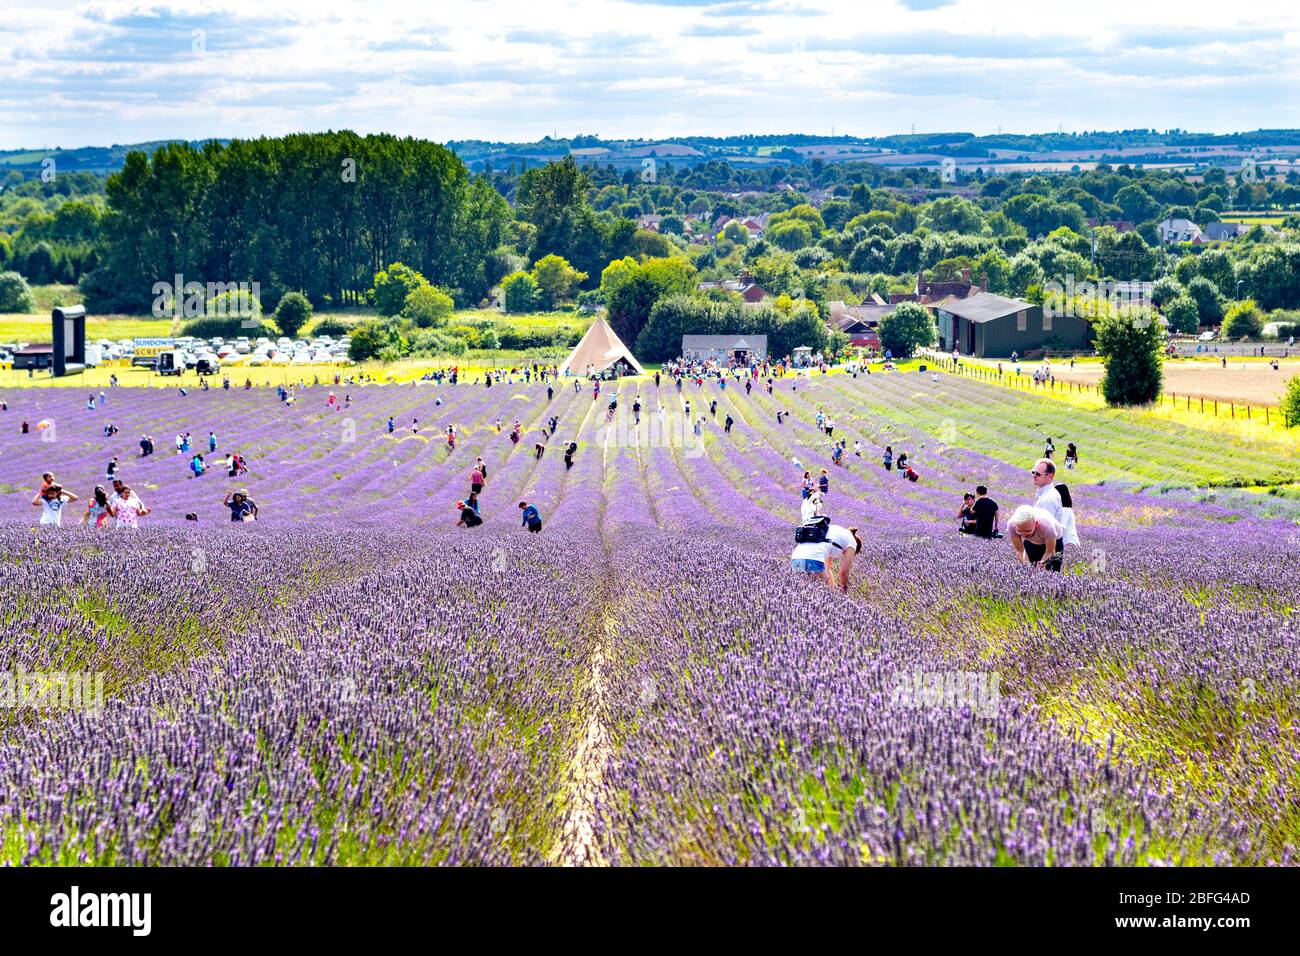 Les gens cueillant de la lavande dans un champ à Hitchin Lavender, Royaume-Uni Banque D'Images